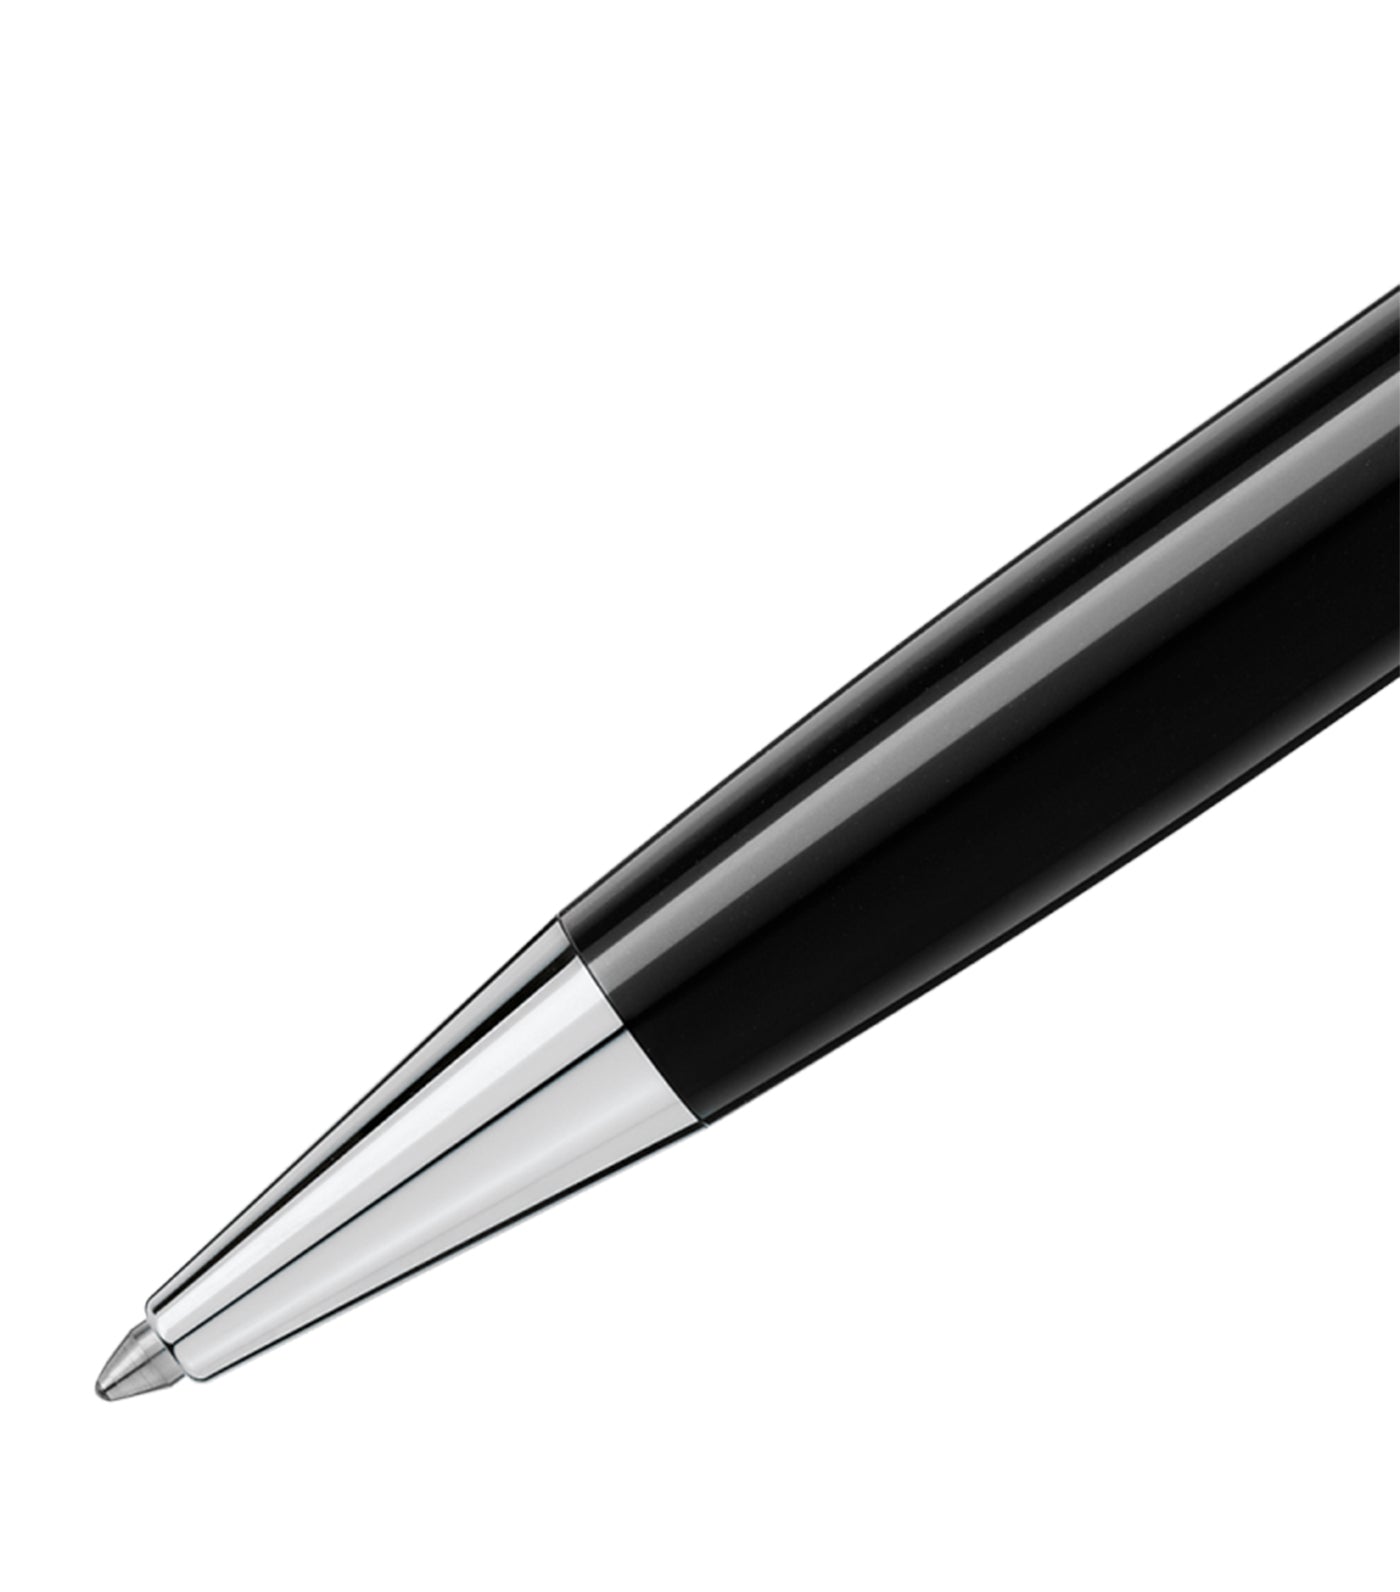 montblanc meisterstã¼ck platinum-coated classique ballpoint pen